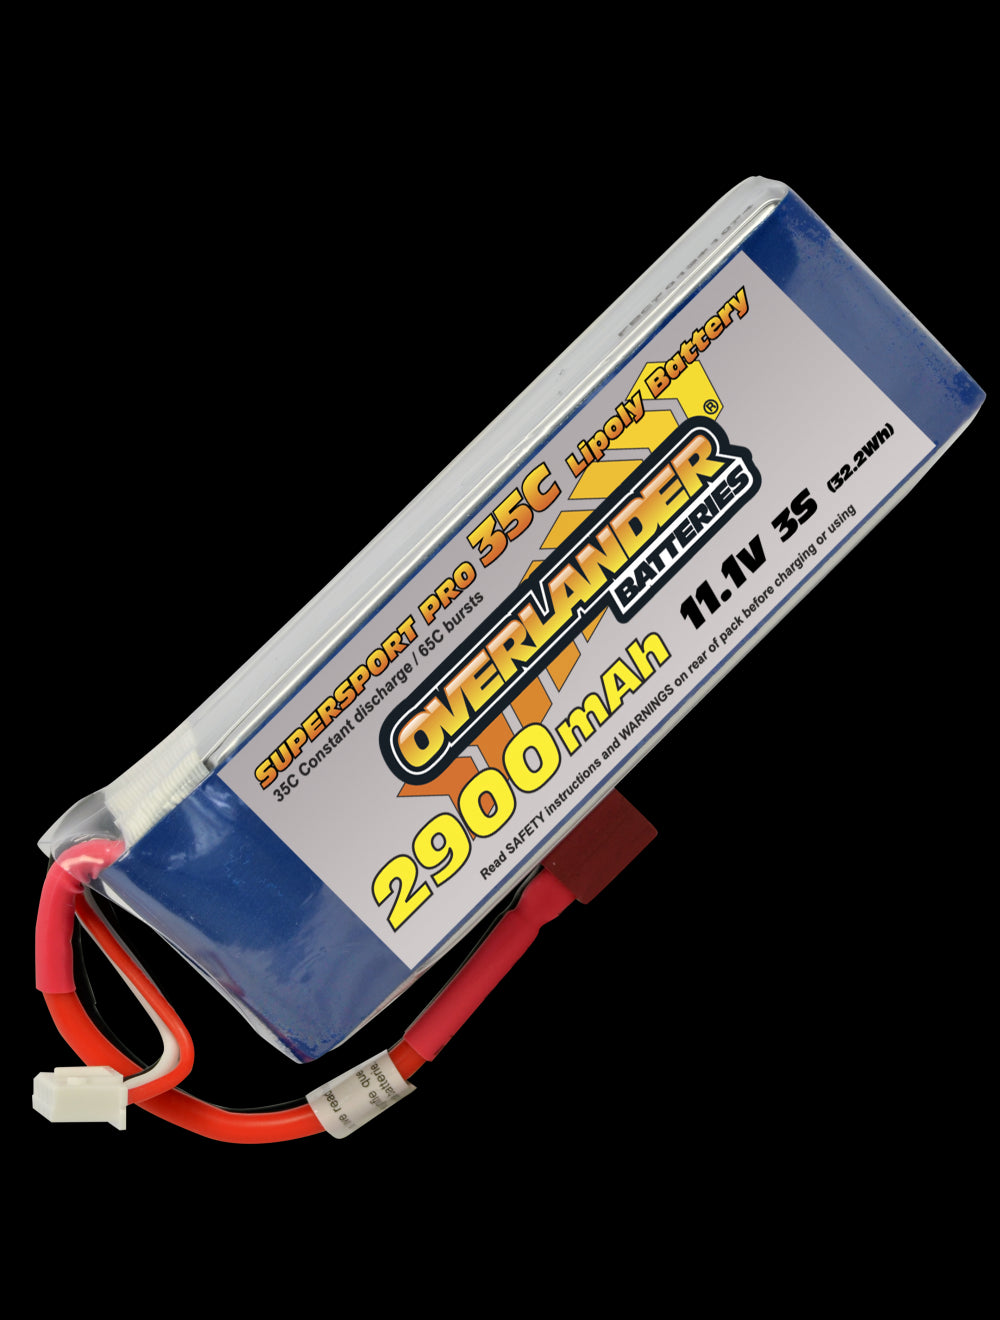 Overlander 2900mAh 11.1V 3S 35C Supersport Pro LiPo Battery - Deans Connector 2804